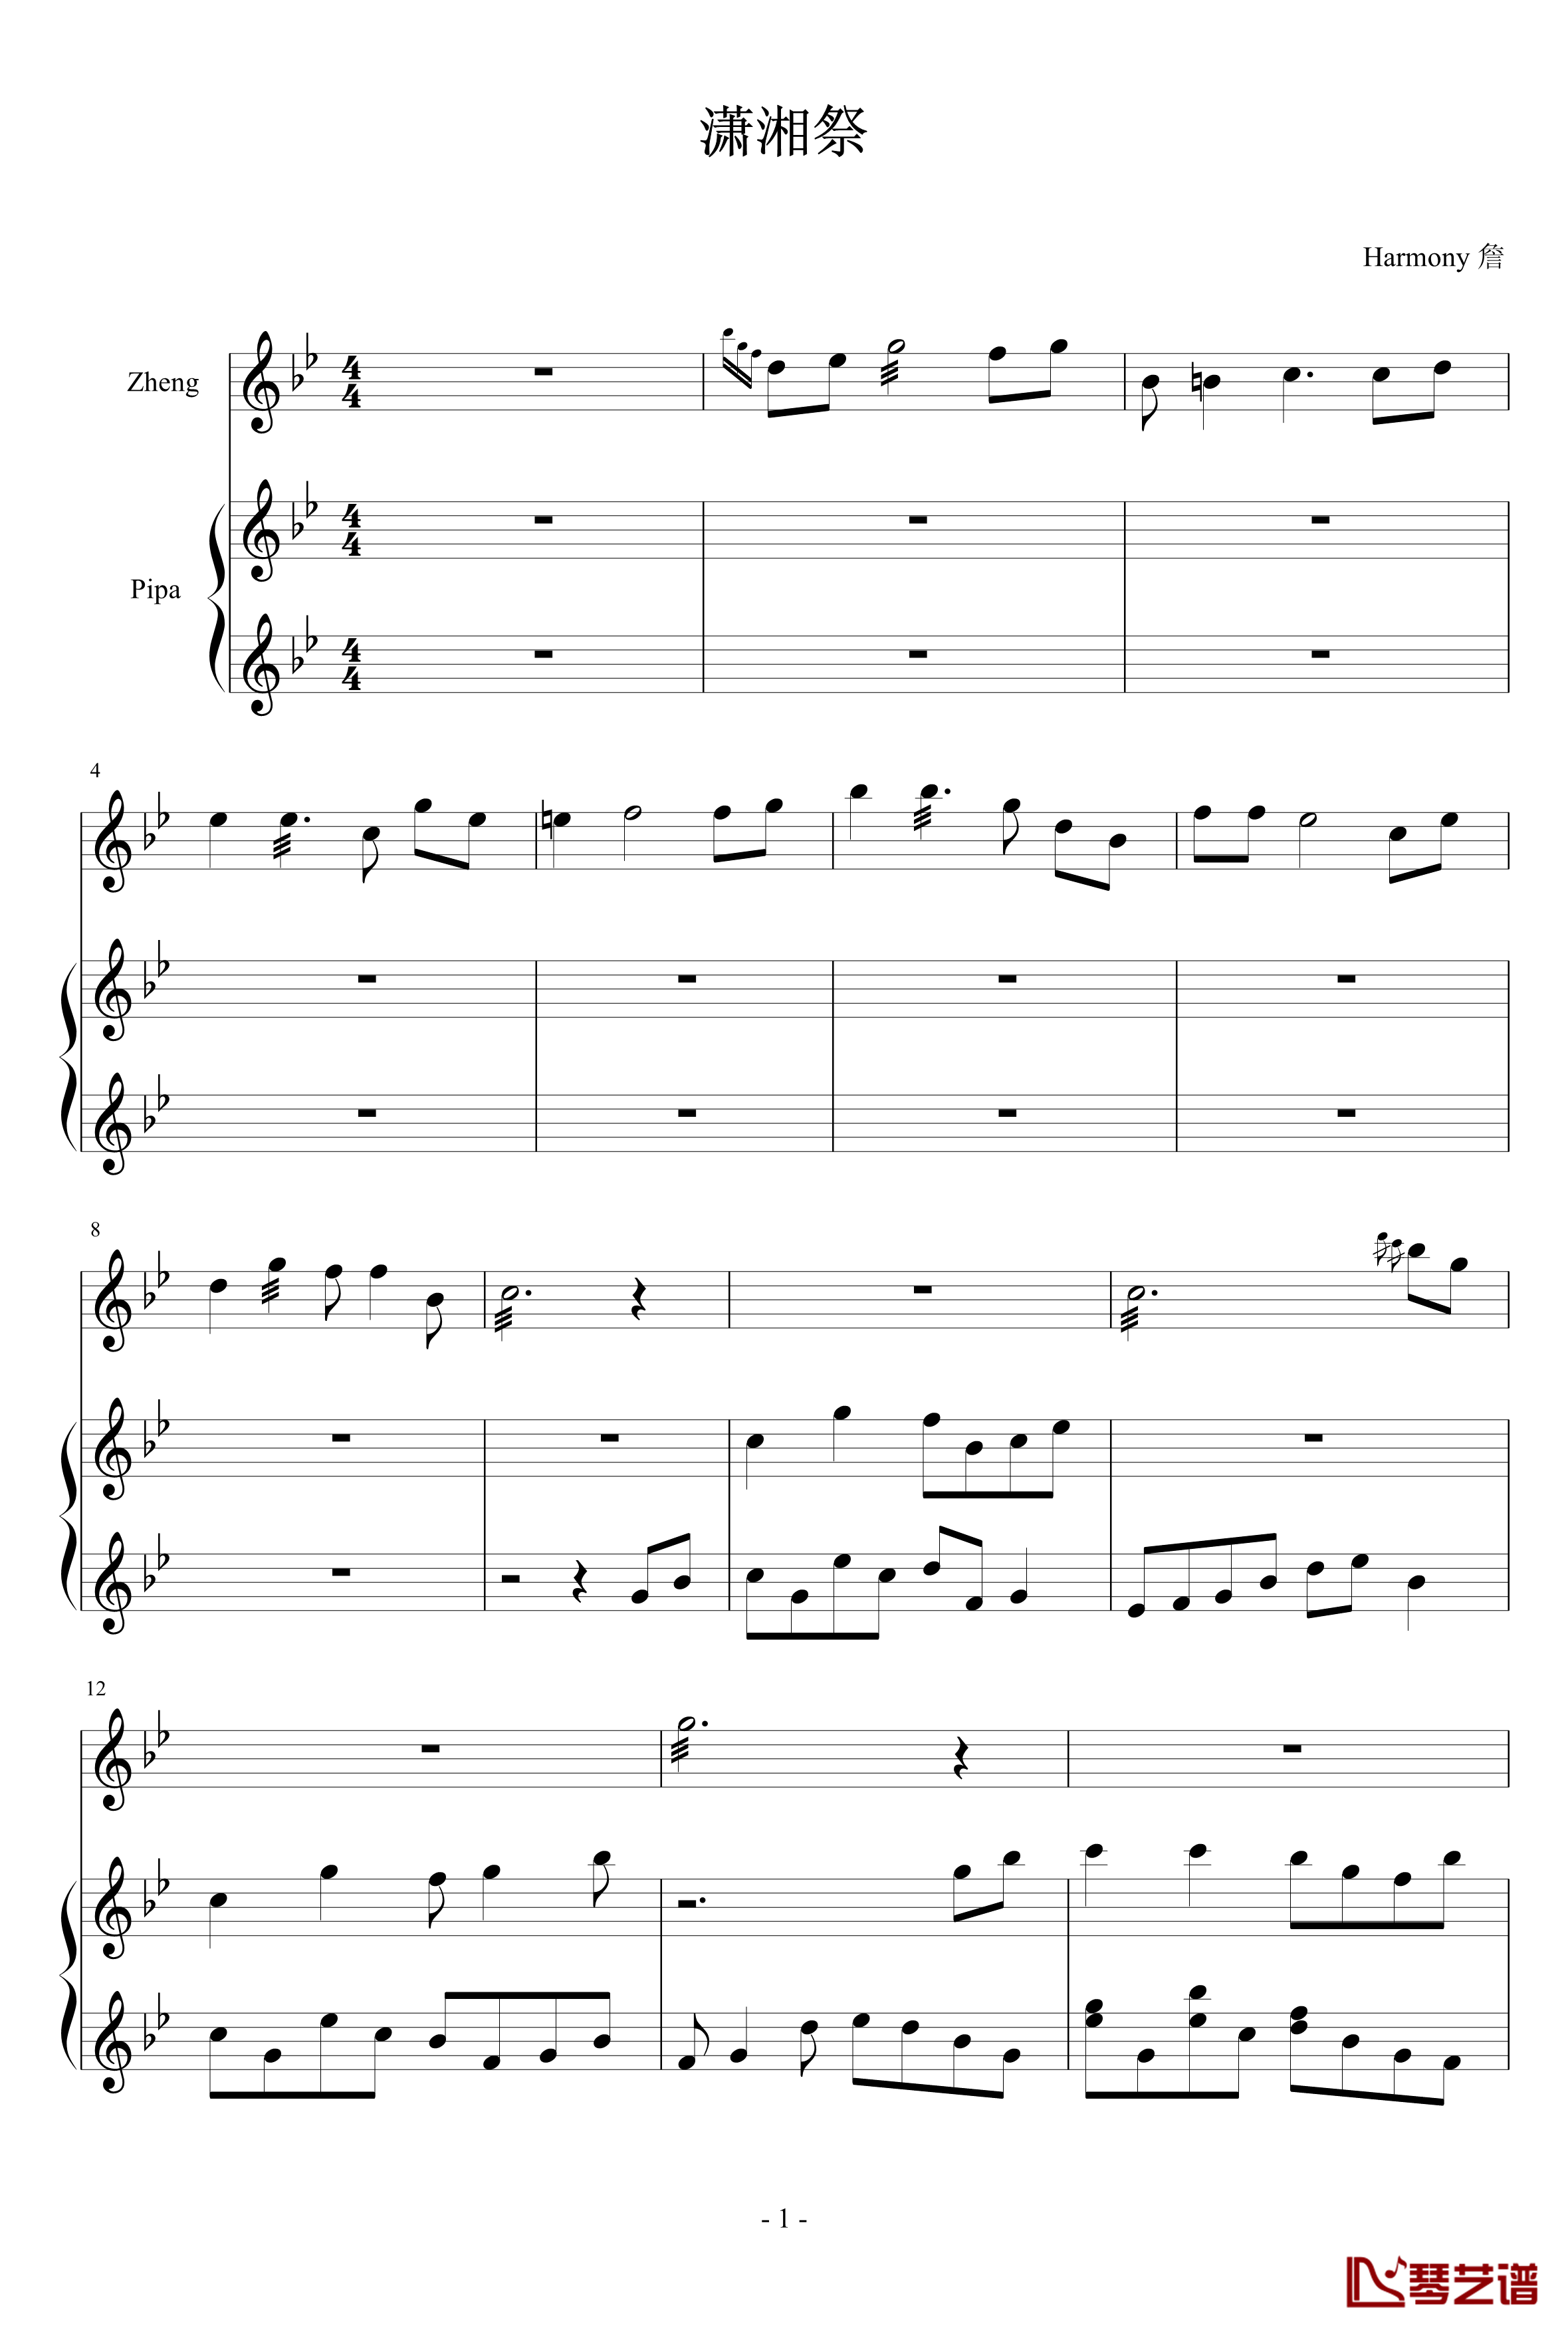 潇湘祭钢琴谱-fomalhauty1